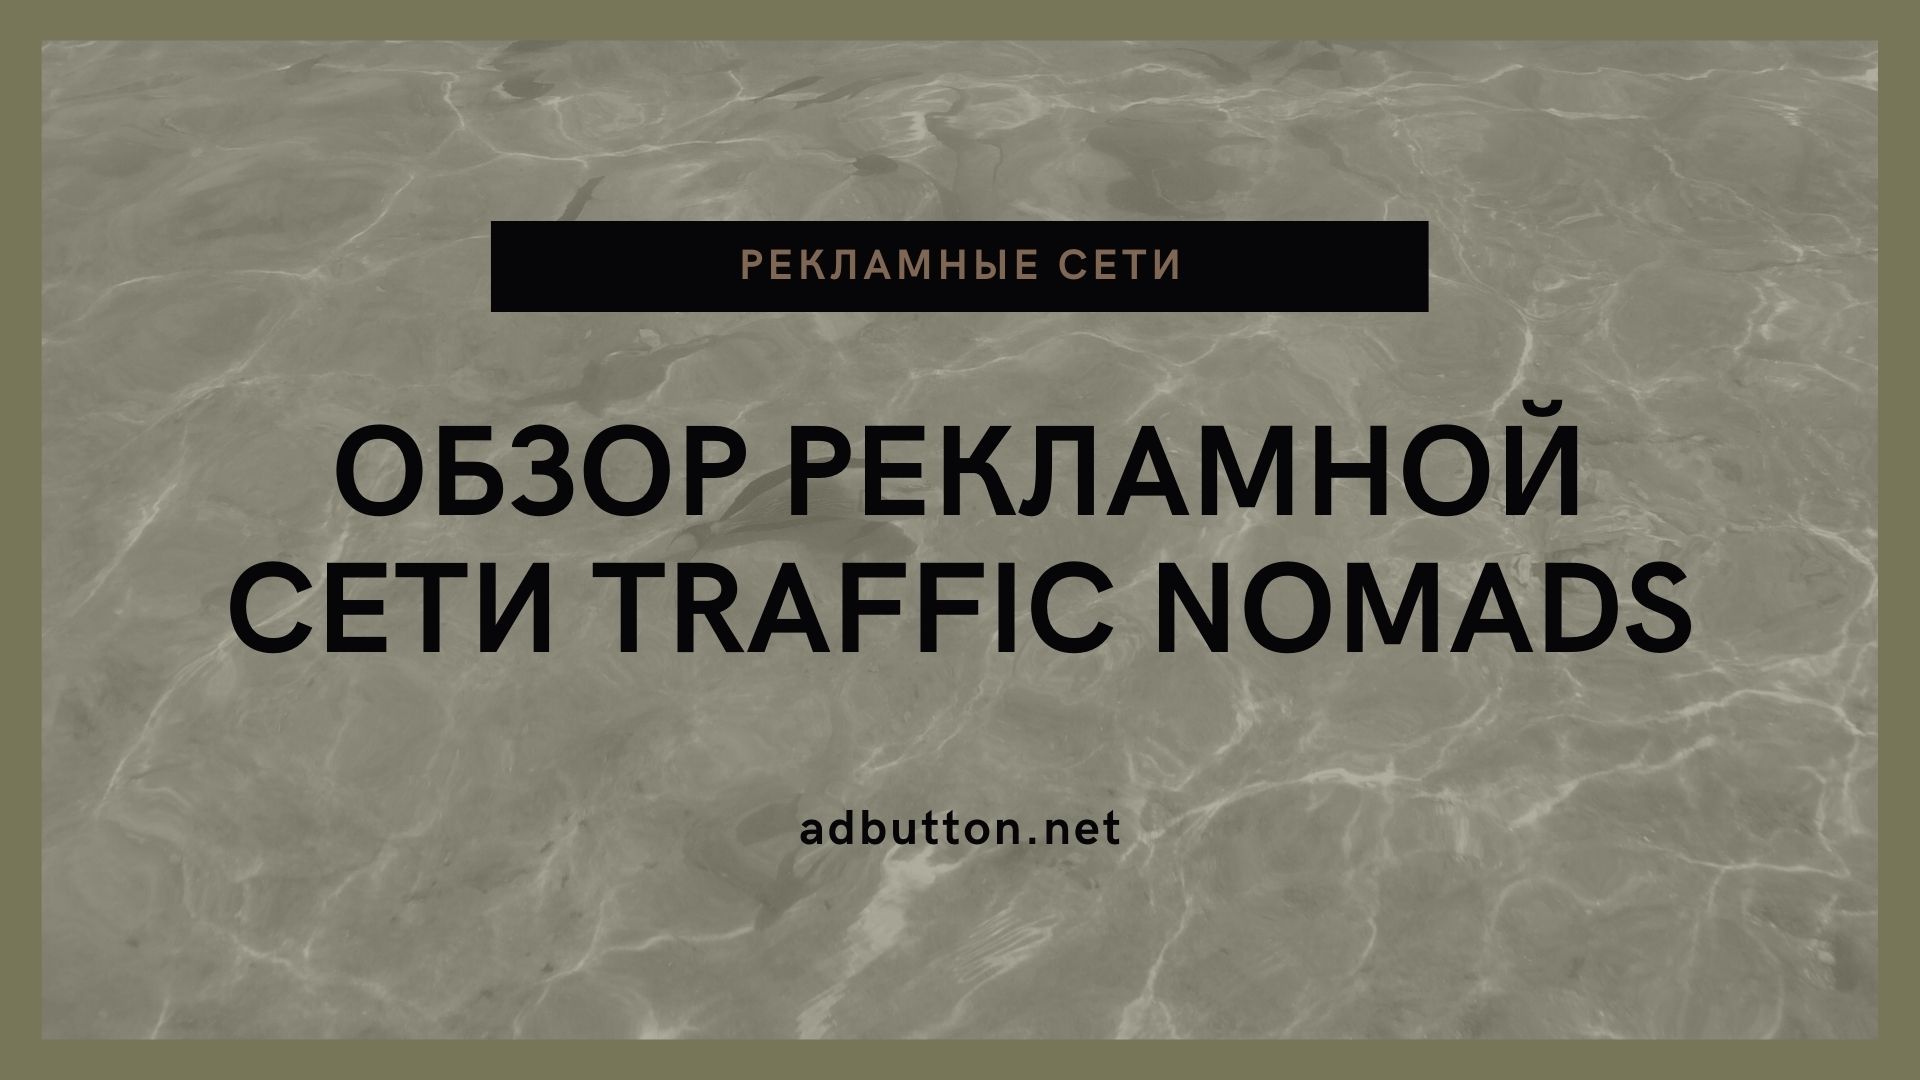 Обзор рекламной сети Traffic Nomads — рекламная платформа для вебмастеров и рекламодателей